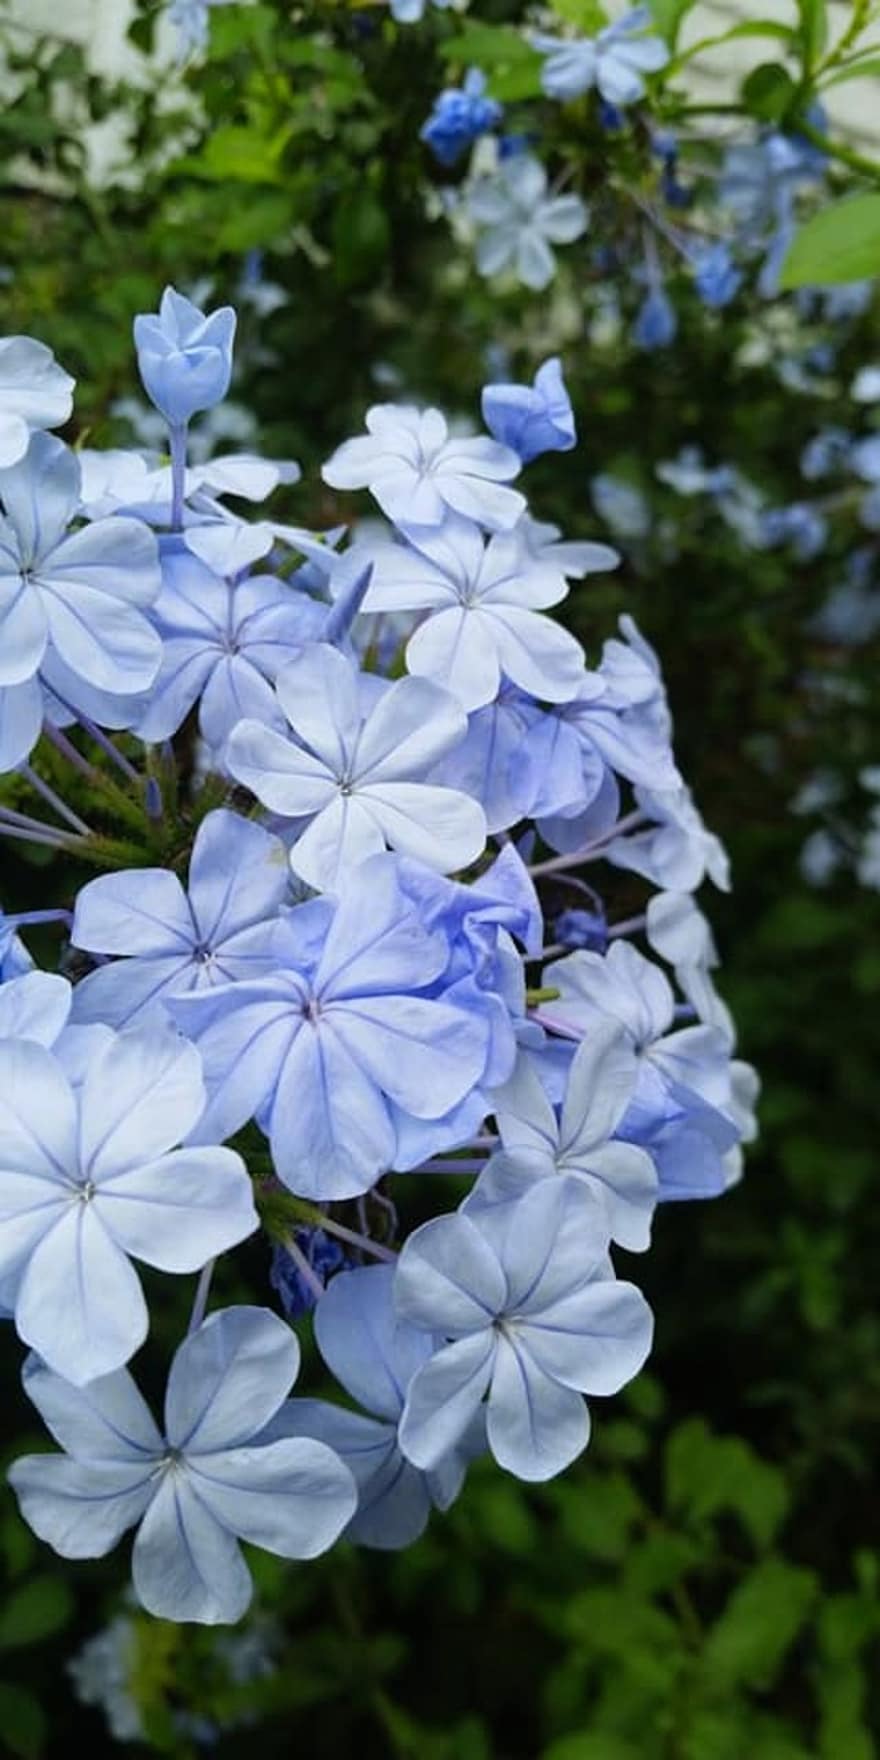 cape leadwort, blommor, växt, blå plumbago, blåa blommor, kronblad, blomma, vår, trädgård, natur